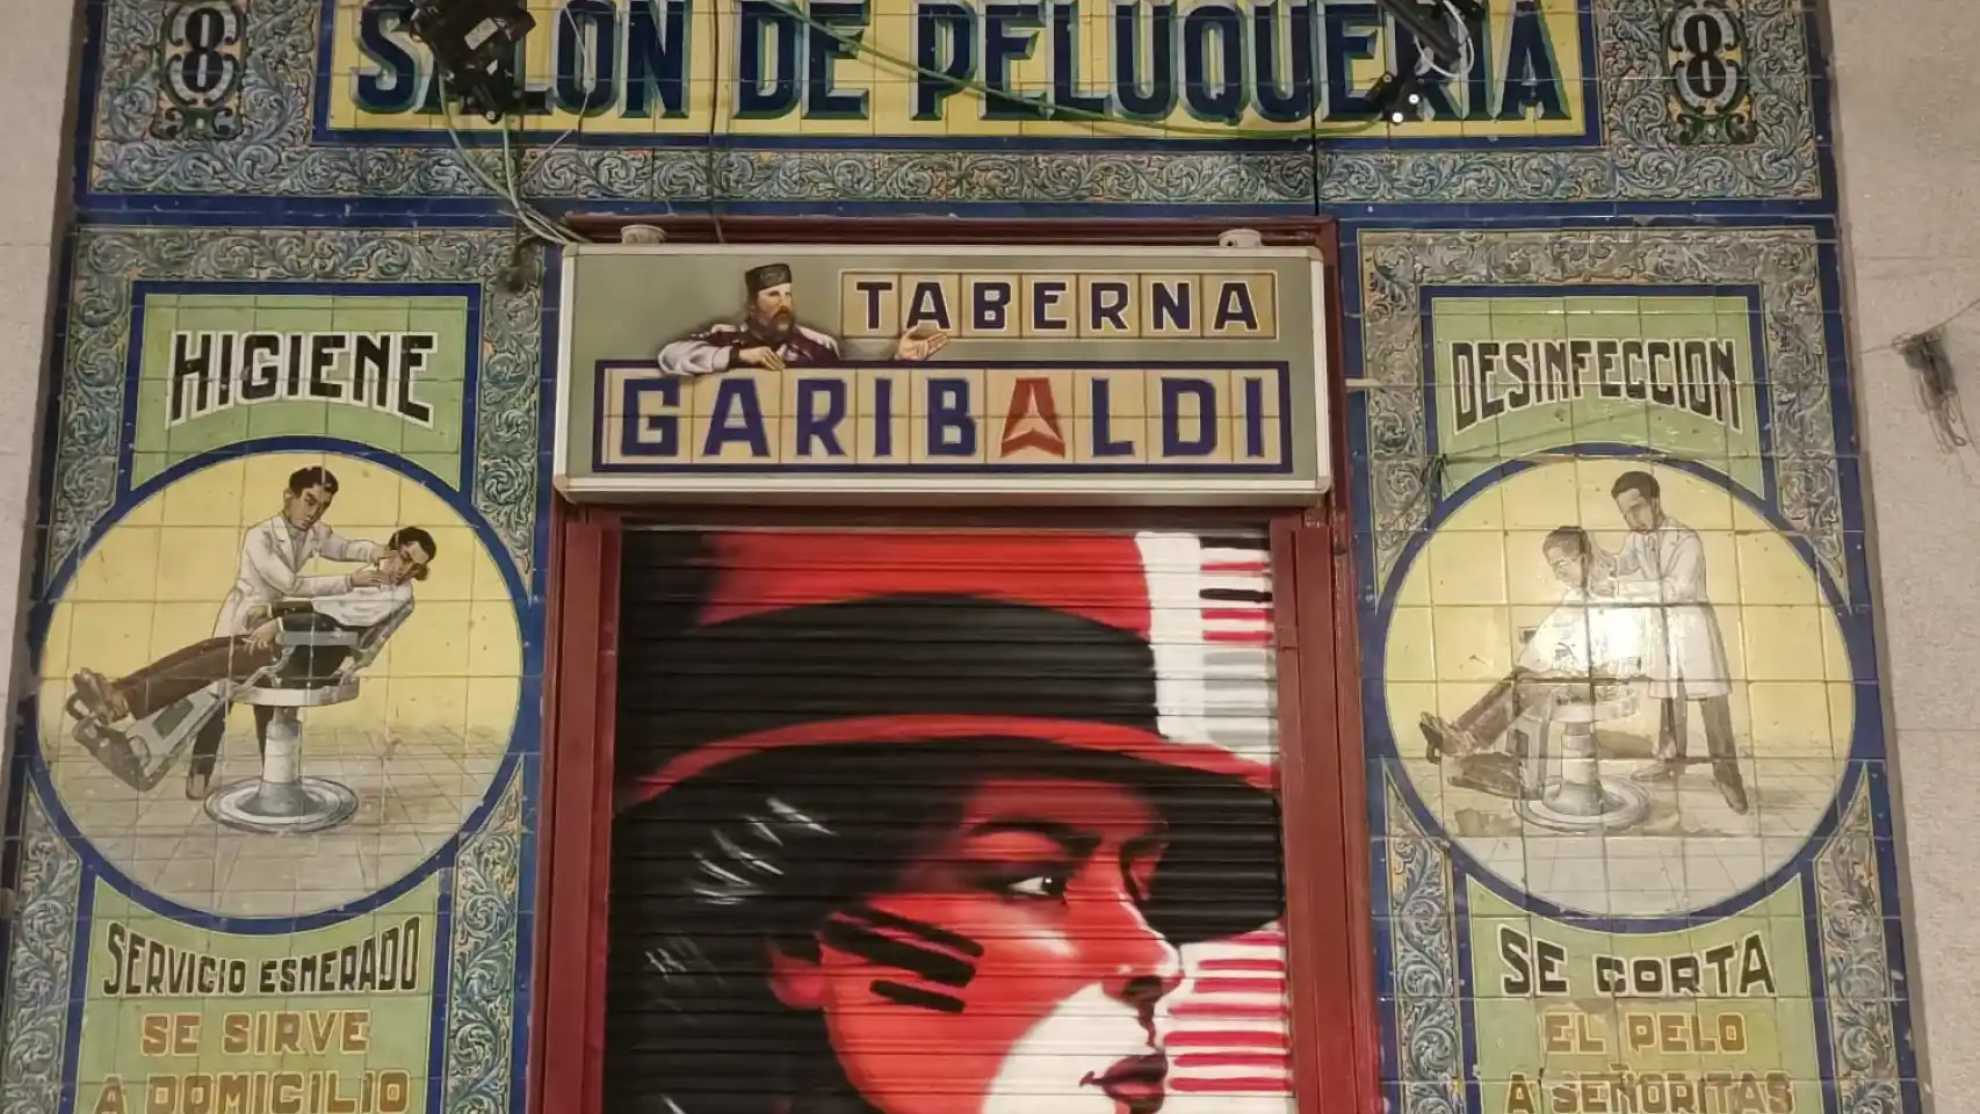 Carta y precios de la Taberna Garibaldi, el bar de Pablo Iglesias en Madrid